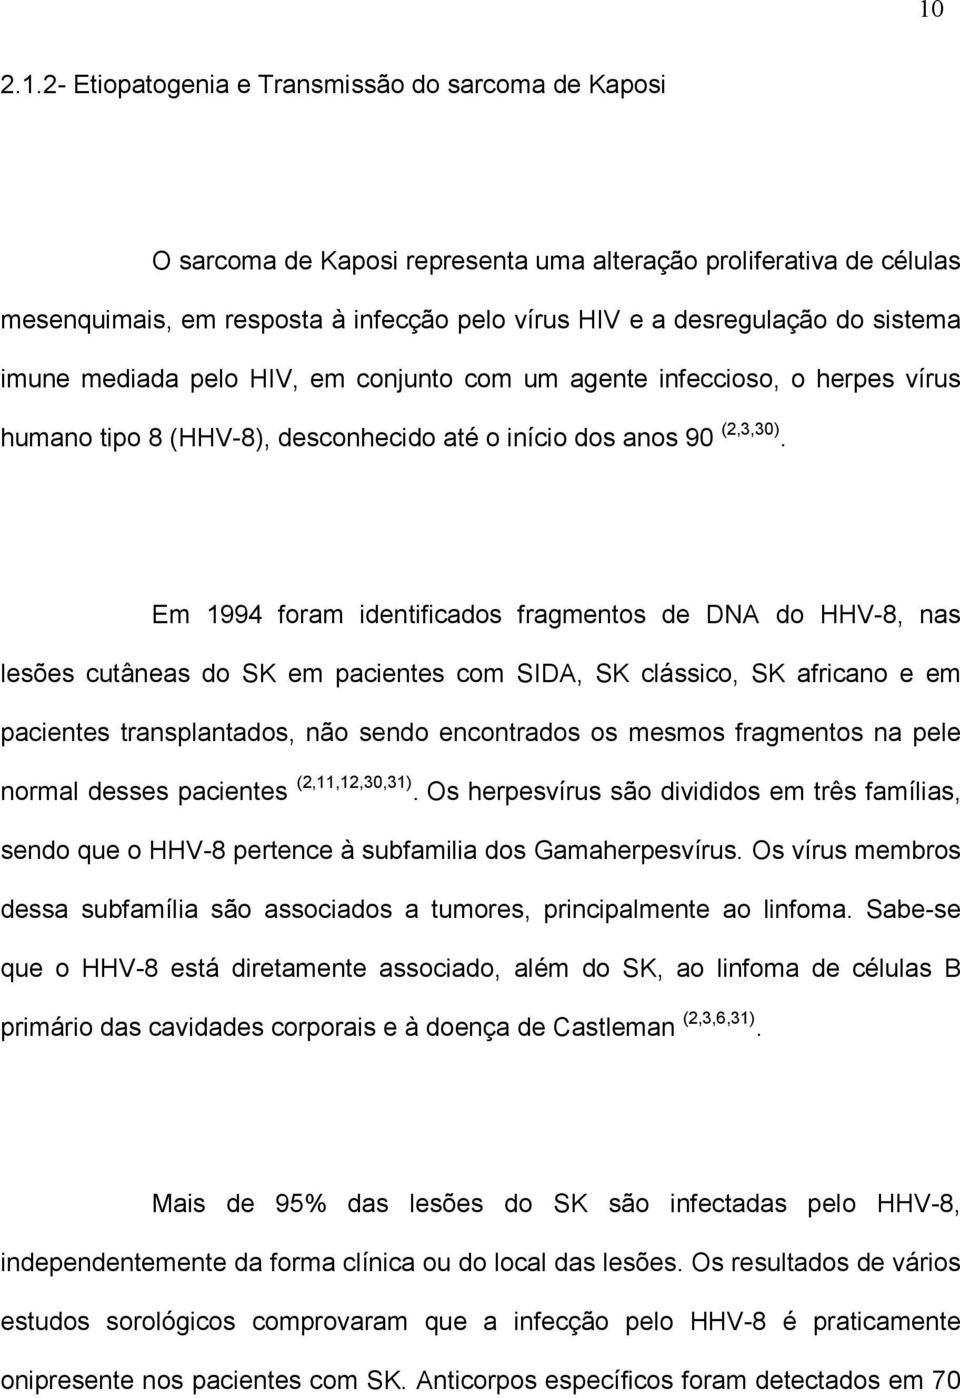 Em 1994 foram identificados fragmentos de DNA do HHV-8, nas lesões cutâneas do SK em pacientes com SIDA, SK clássico, SK africano e em pacientes transplantados, não sendo encontrados os mesmos